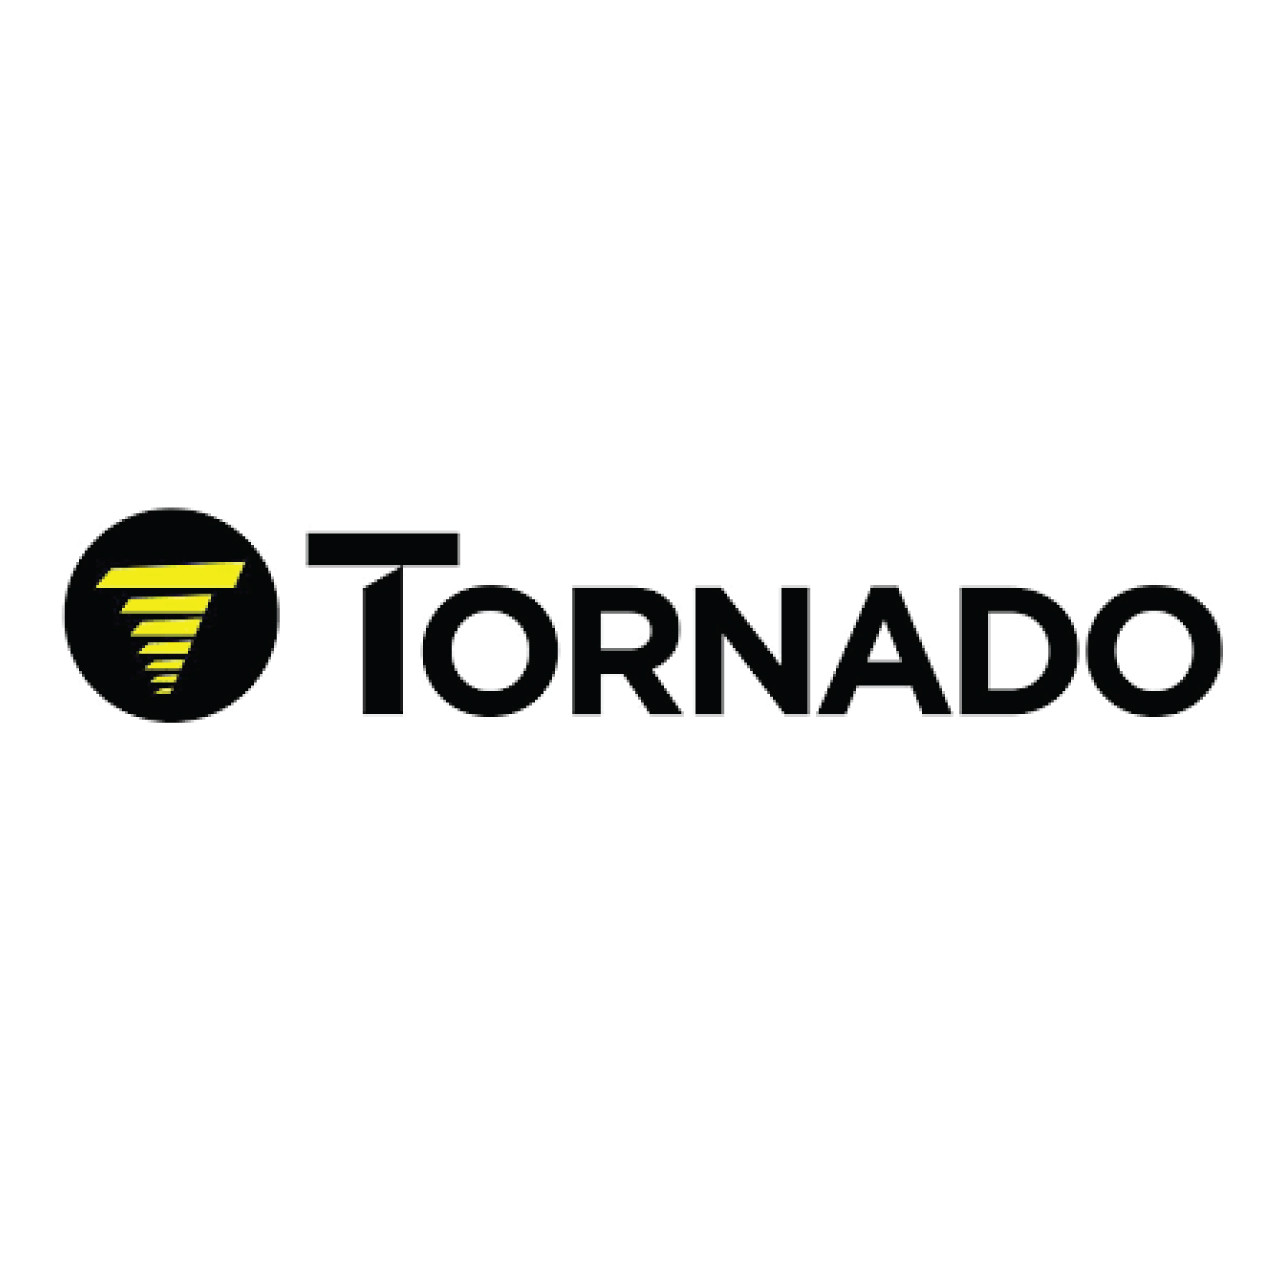 00-0616-0111, Tornado 00-0616-0111, Tornado BOLT M6 X 16 HEX HEAD, Tornado parts, tornado scrubber parts, tornado vacuum parts, tornado extractor parts, tornado floor machine parts